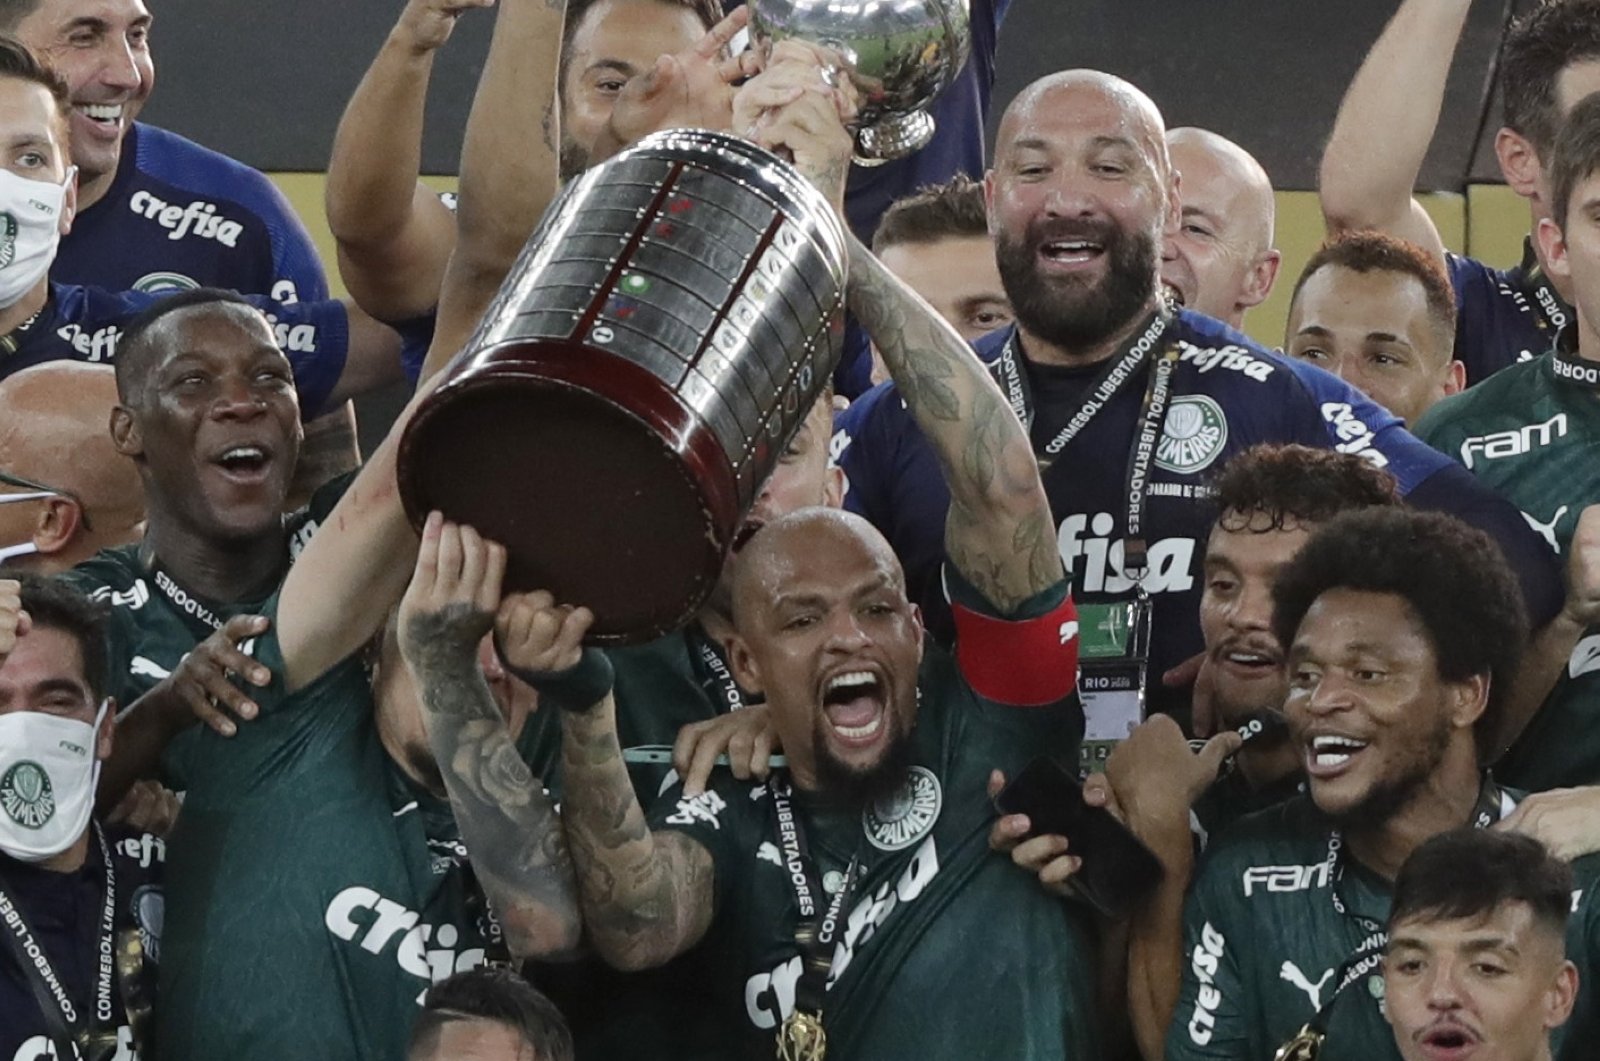 Santos aim to cap turbulent year with Libertadores success